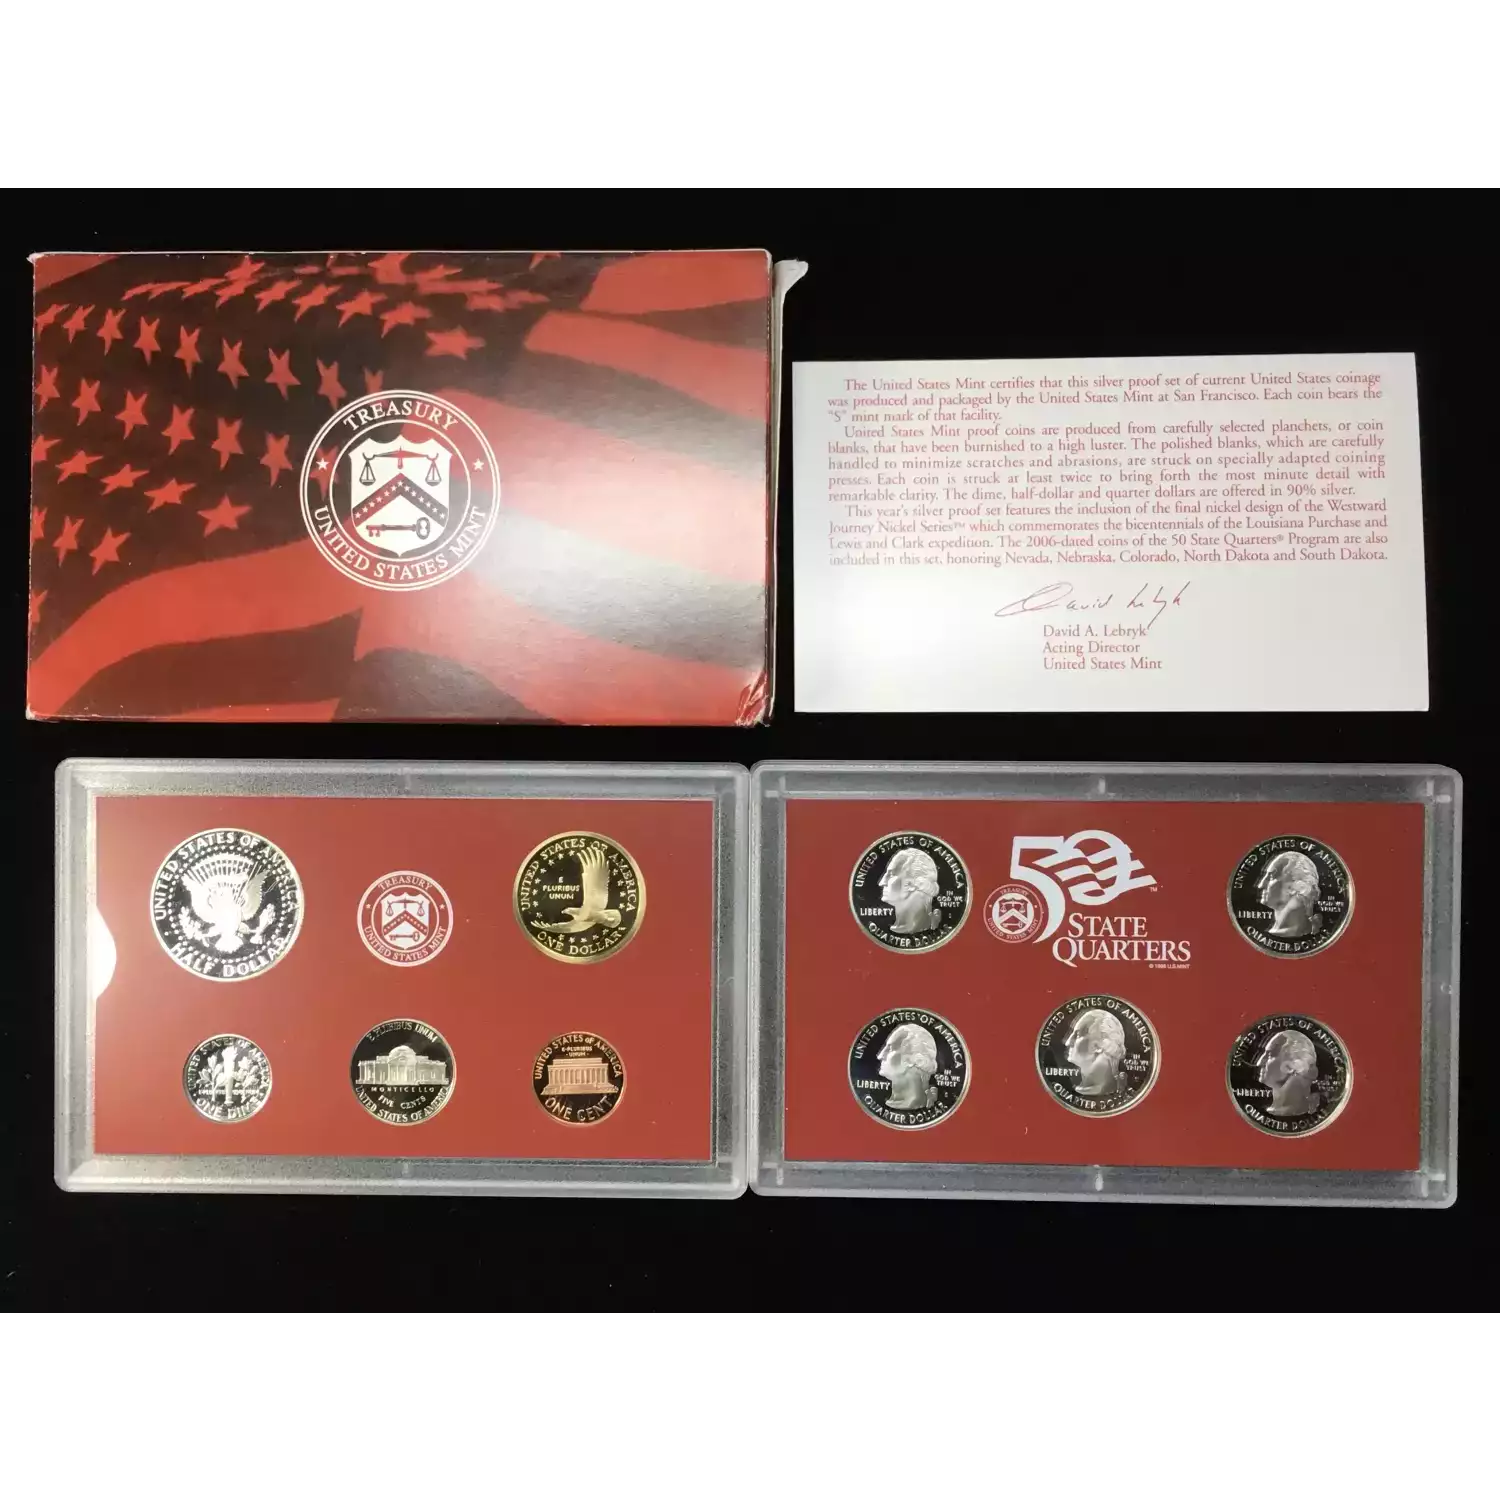 2006-S US Mint Silver Proof Set w OGP - Box & COA